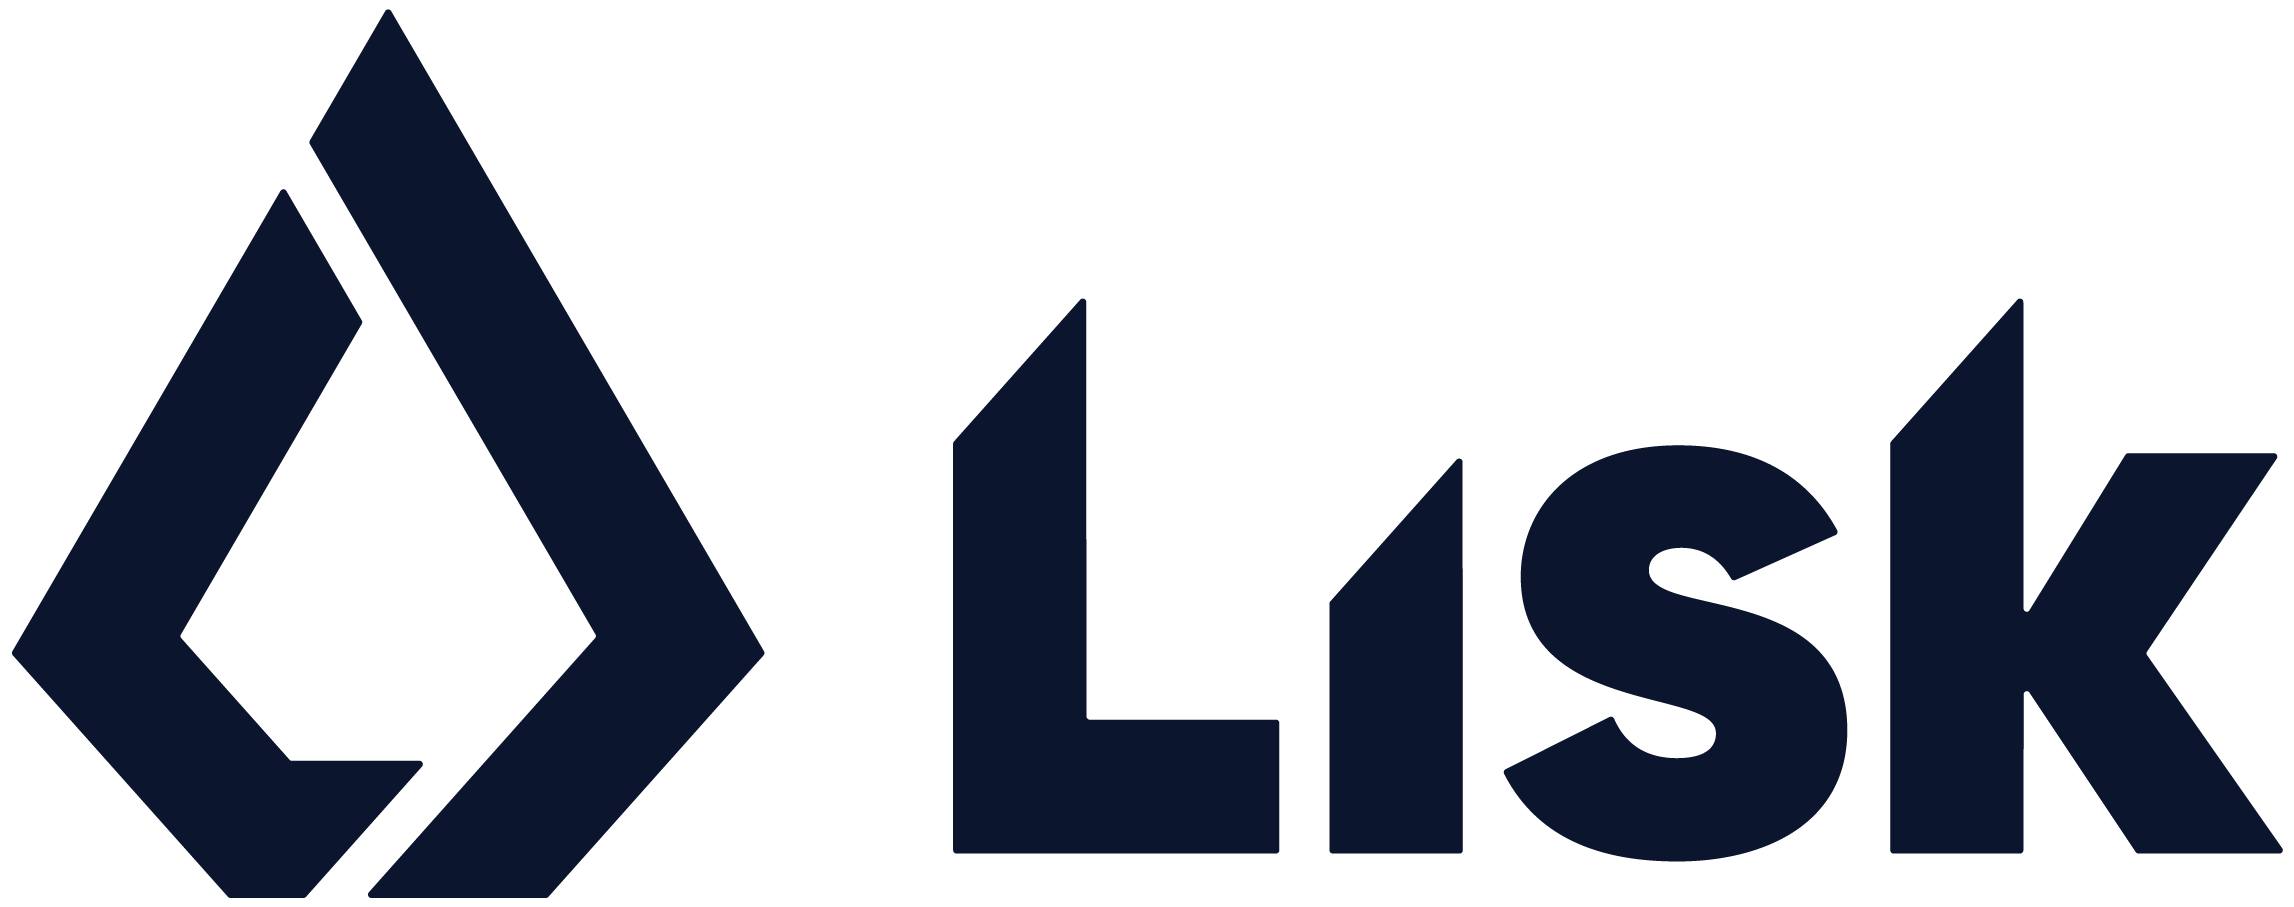 Lisk logo colors